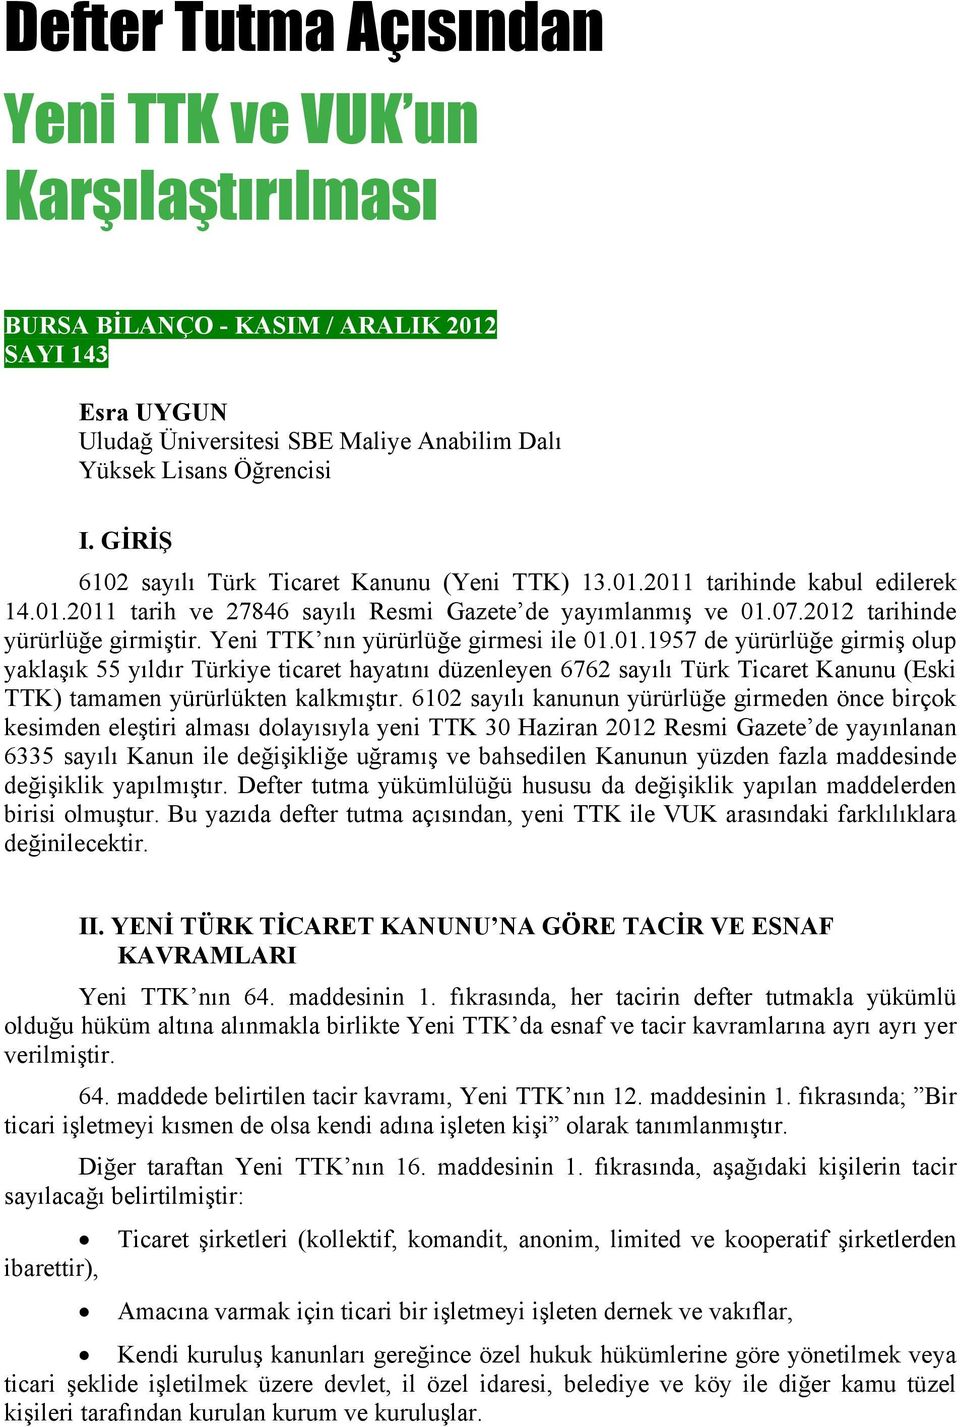 Yeni TTK nın yürürlüğe girmesi ile 01.01.1957 de yürürlüğe girmiş olup yaklaşık 55 yıldır Türkiye ticaret hayatını düzenleyen 6762 sayılı Türk Ticaret Kanunu (Eski TTK) tamamen yürürlükten kalkmıştır.